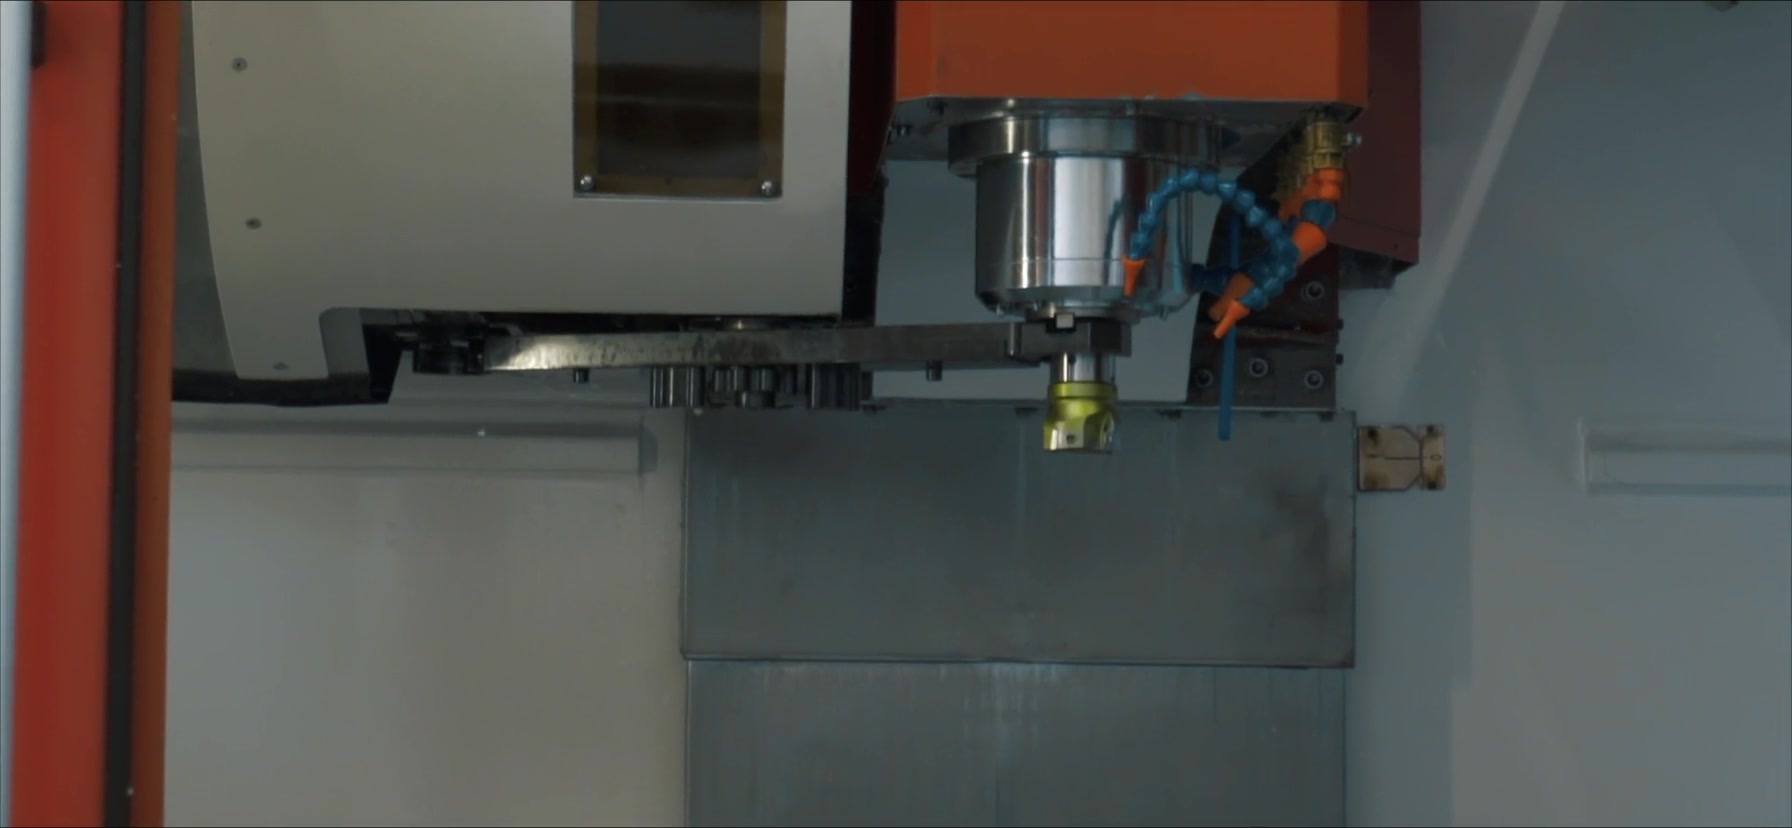 Die Firma BFT Brantsch Fertigungstechnik stellt sich vor. Arbeitsschritte und Prozesse beim CNC-Fräsen werden gezeigt.